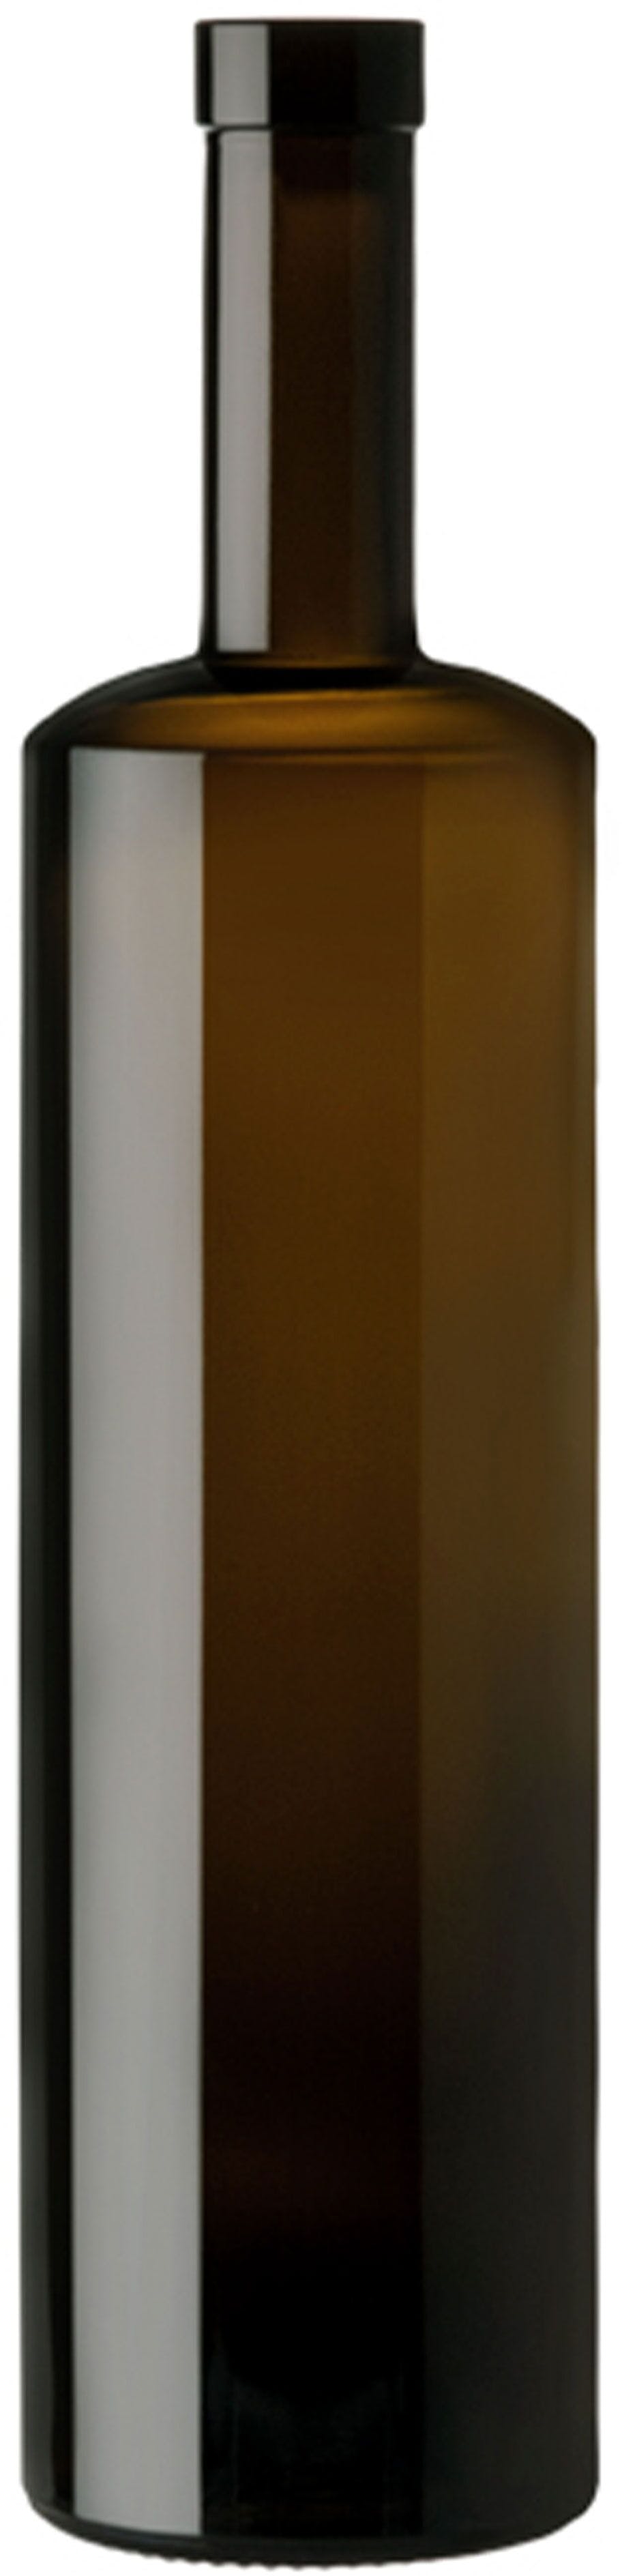 Bottiglia KIRA  WINE 750 ml BG-Sughero